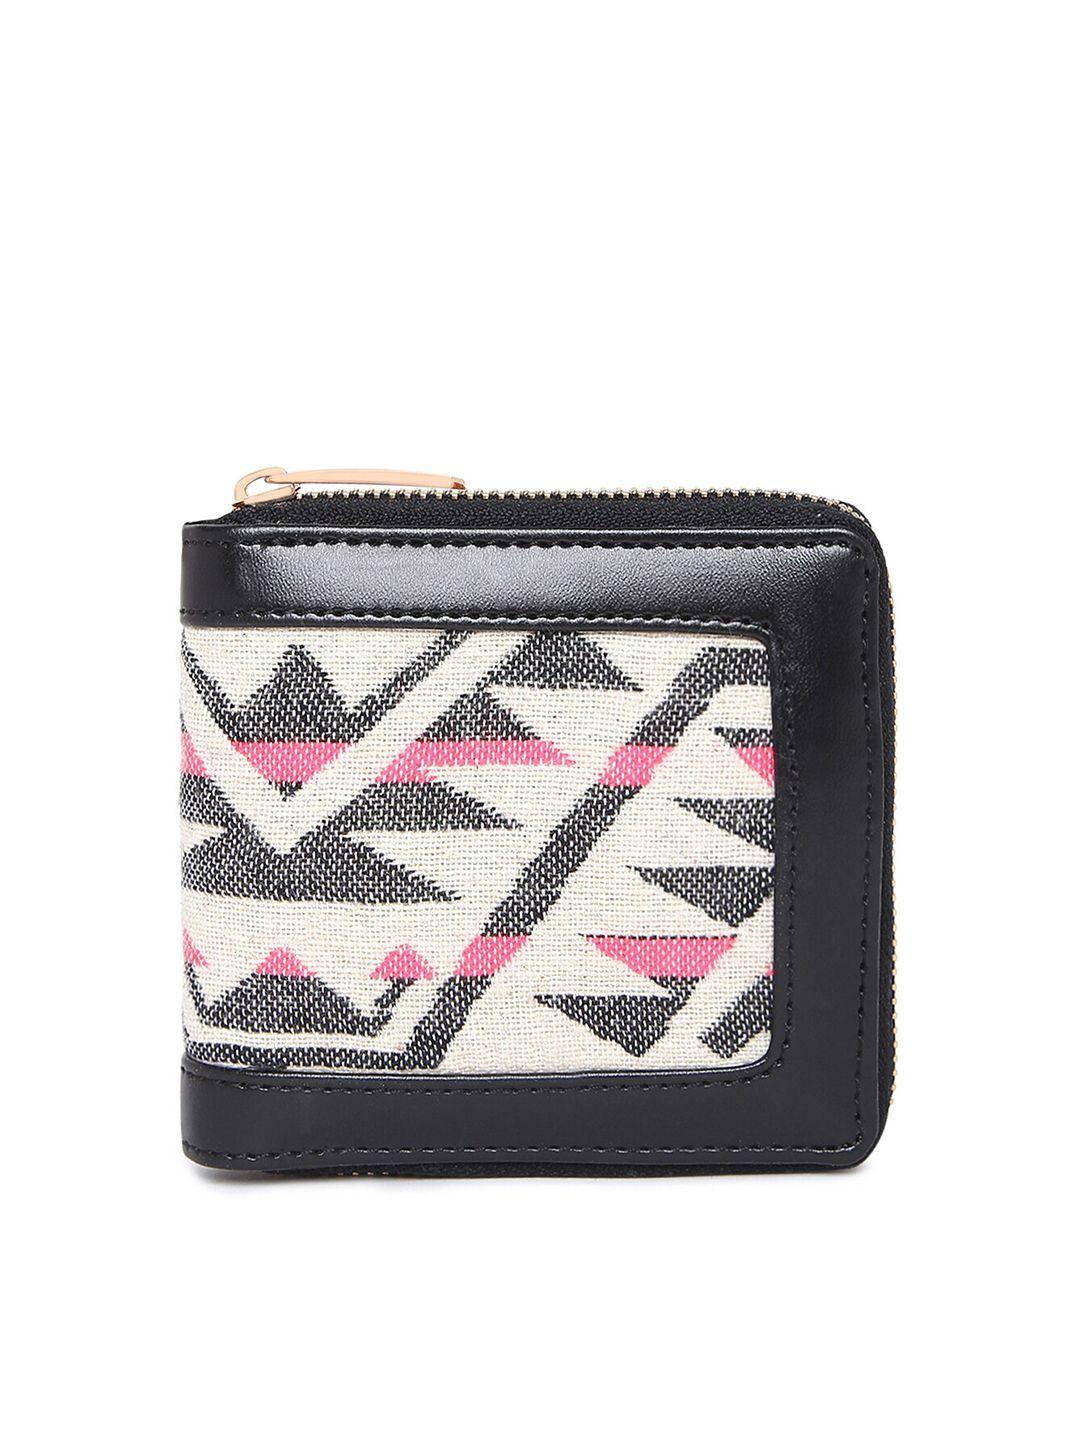 kleio women black & white geometric self design zip around wallet